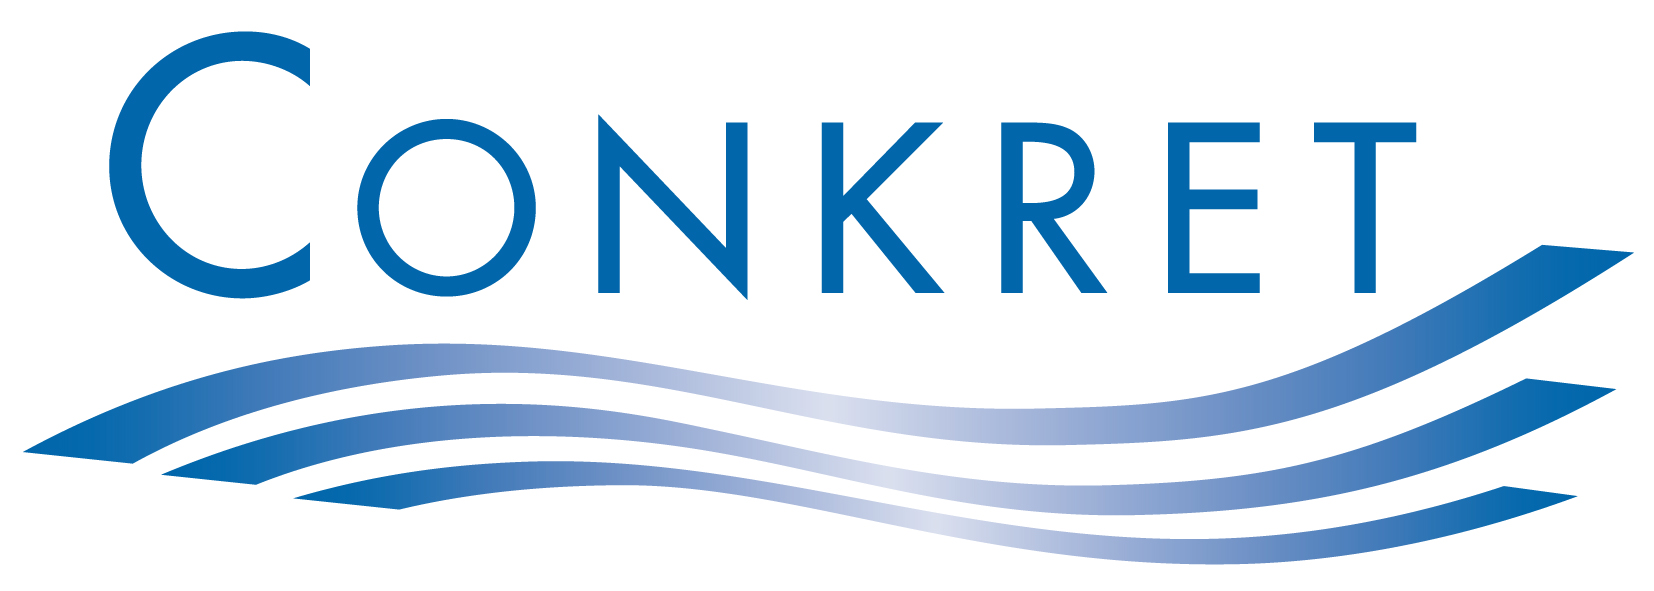 Conkret GmbH & Co. KG Logo